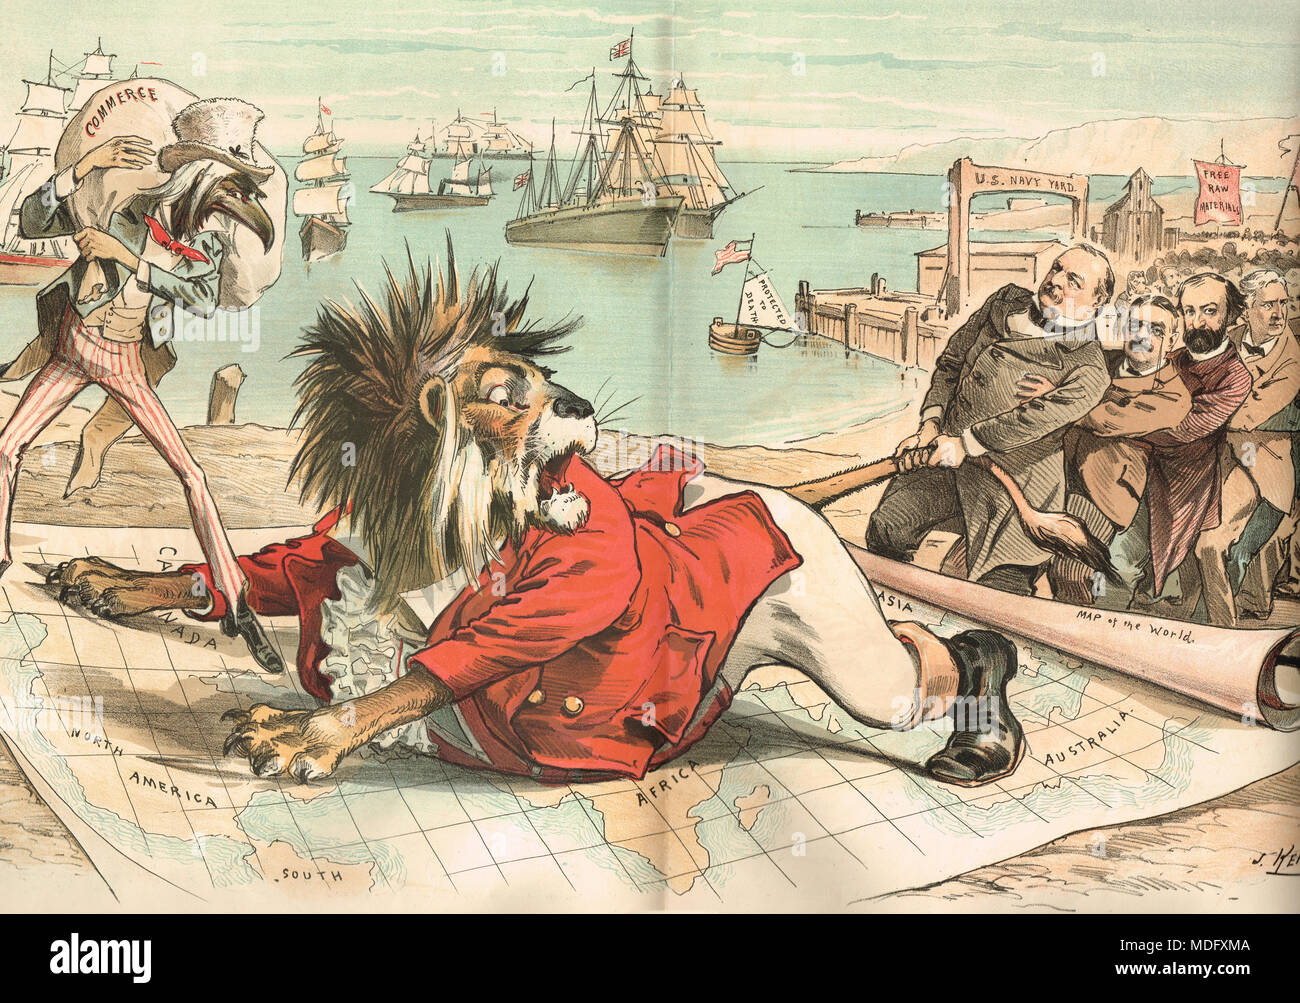 Grover Cleveland, la réforme tarifaire, Puck Magazine, 1888, Apprivoiser le lion britannique du commerce, de l'empire britannique Banque D'Images